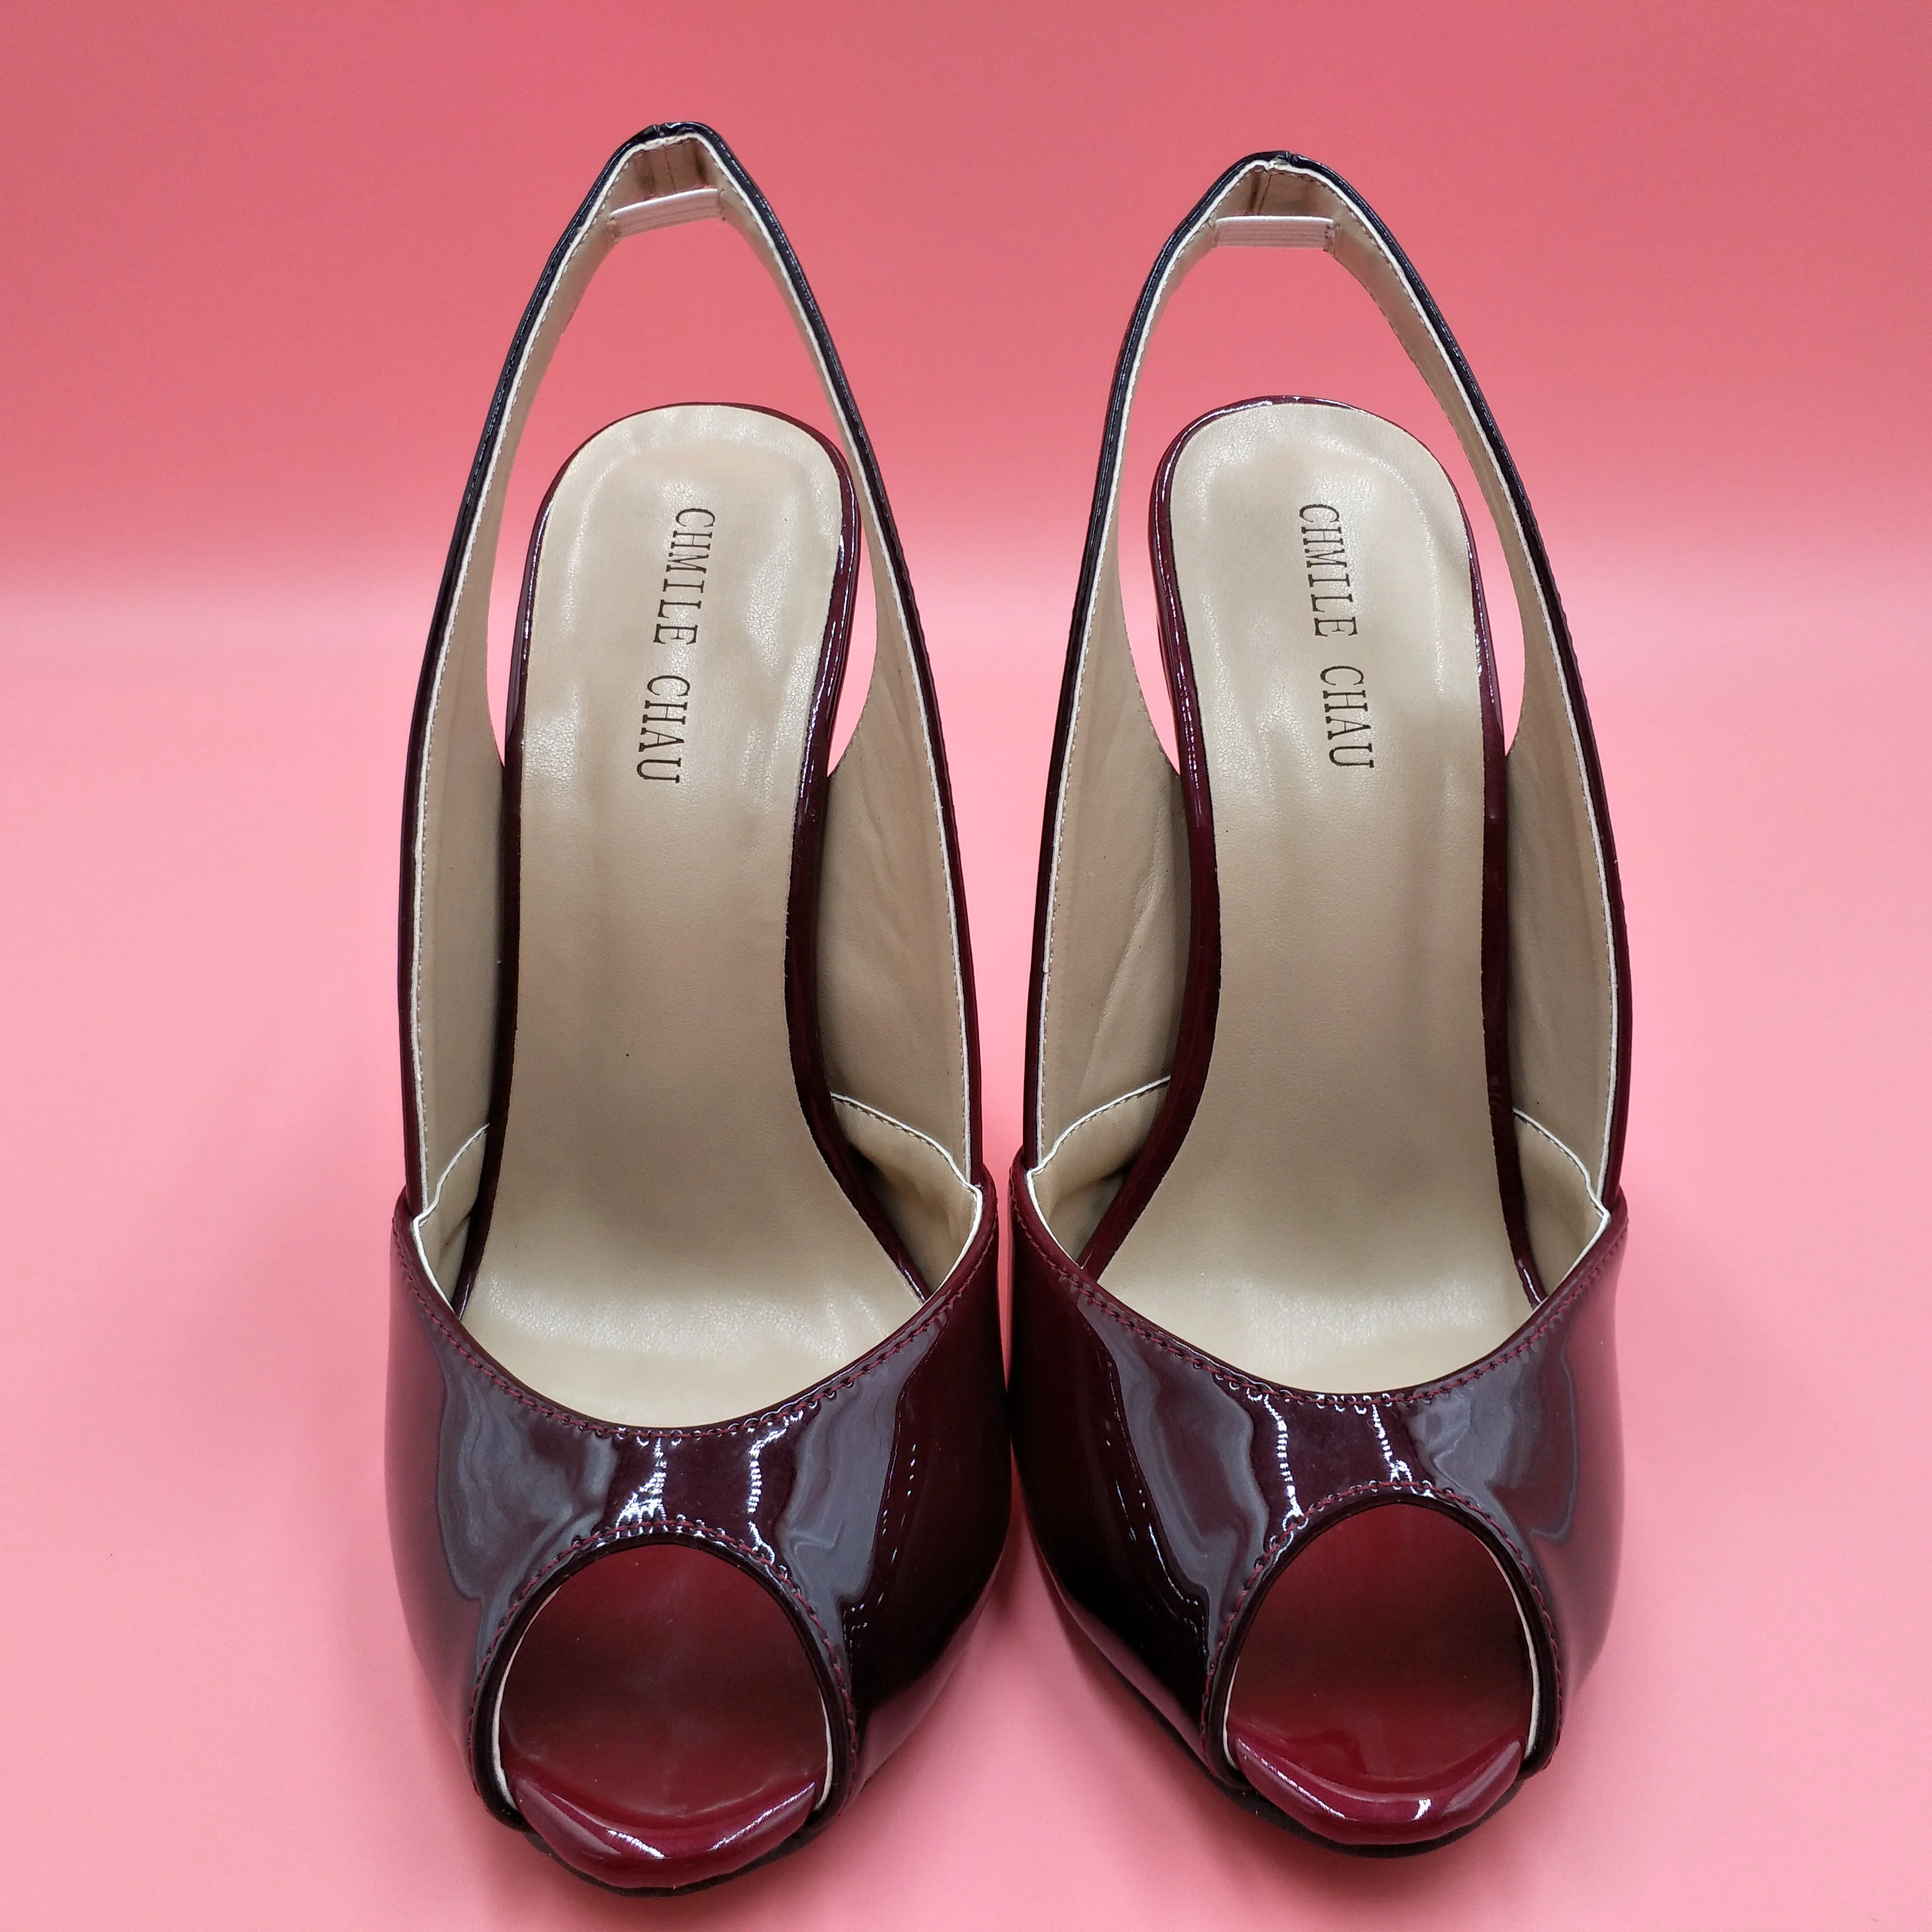 Пикантные лакированные туфли-лодочки черного и красного цвета модельные туфли на высоком каблуке вечерние женские туфли-лодочки новые летние туфли с открытым носком на шпильке 11 см